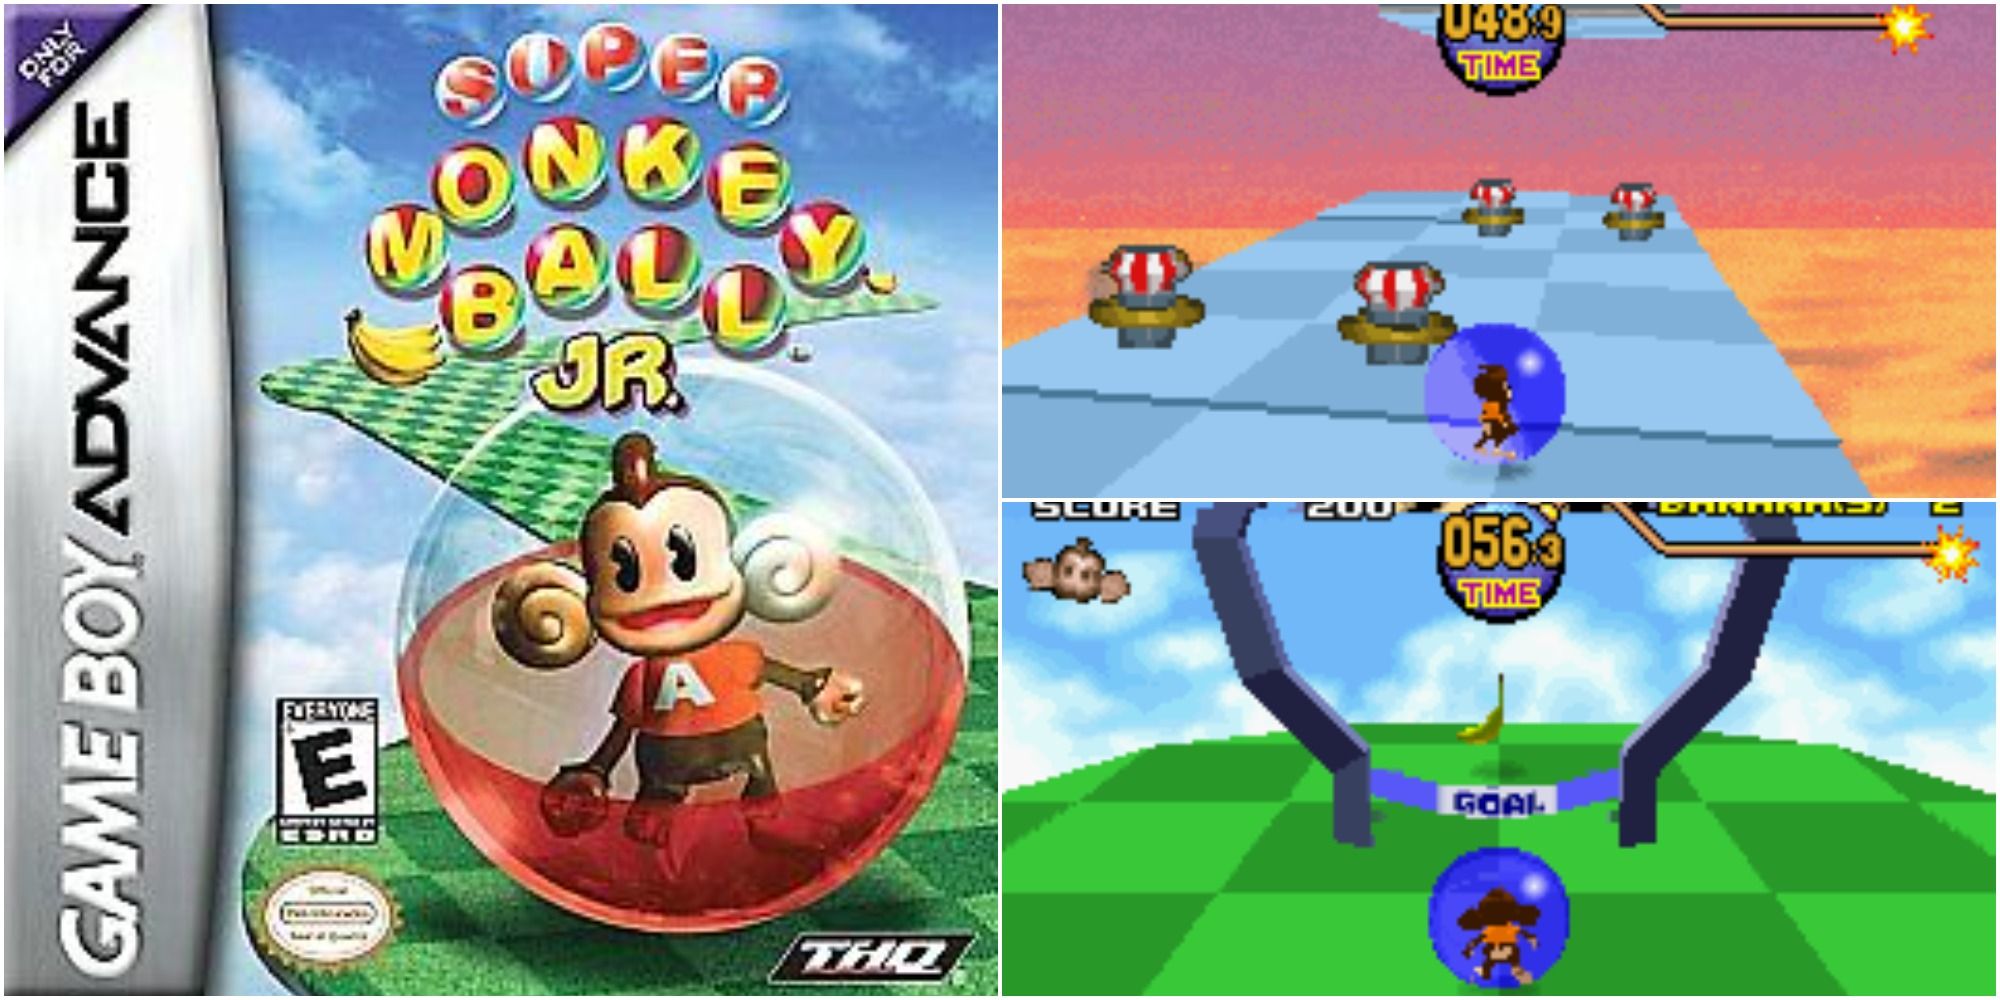 Super Monkey Ball Jr Game Boy Advance